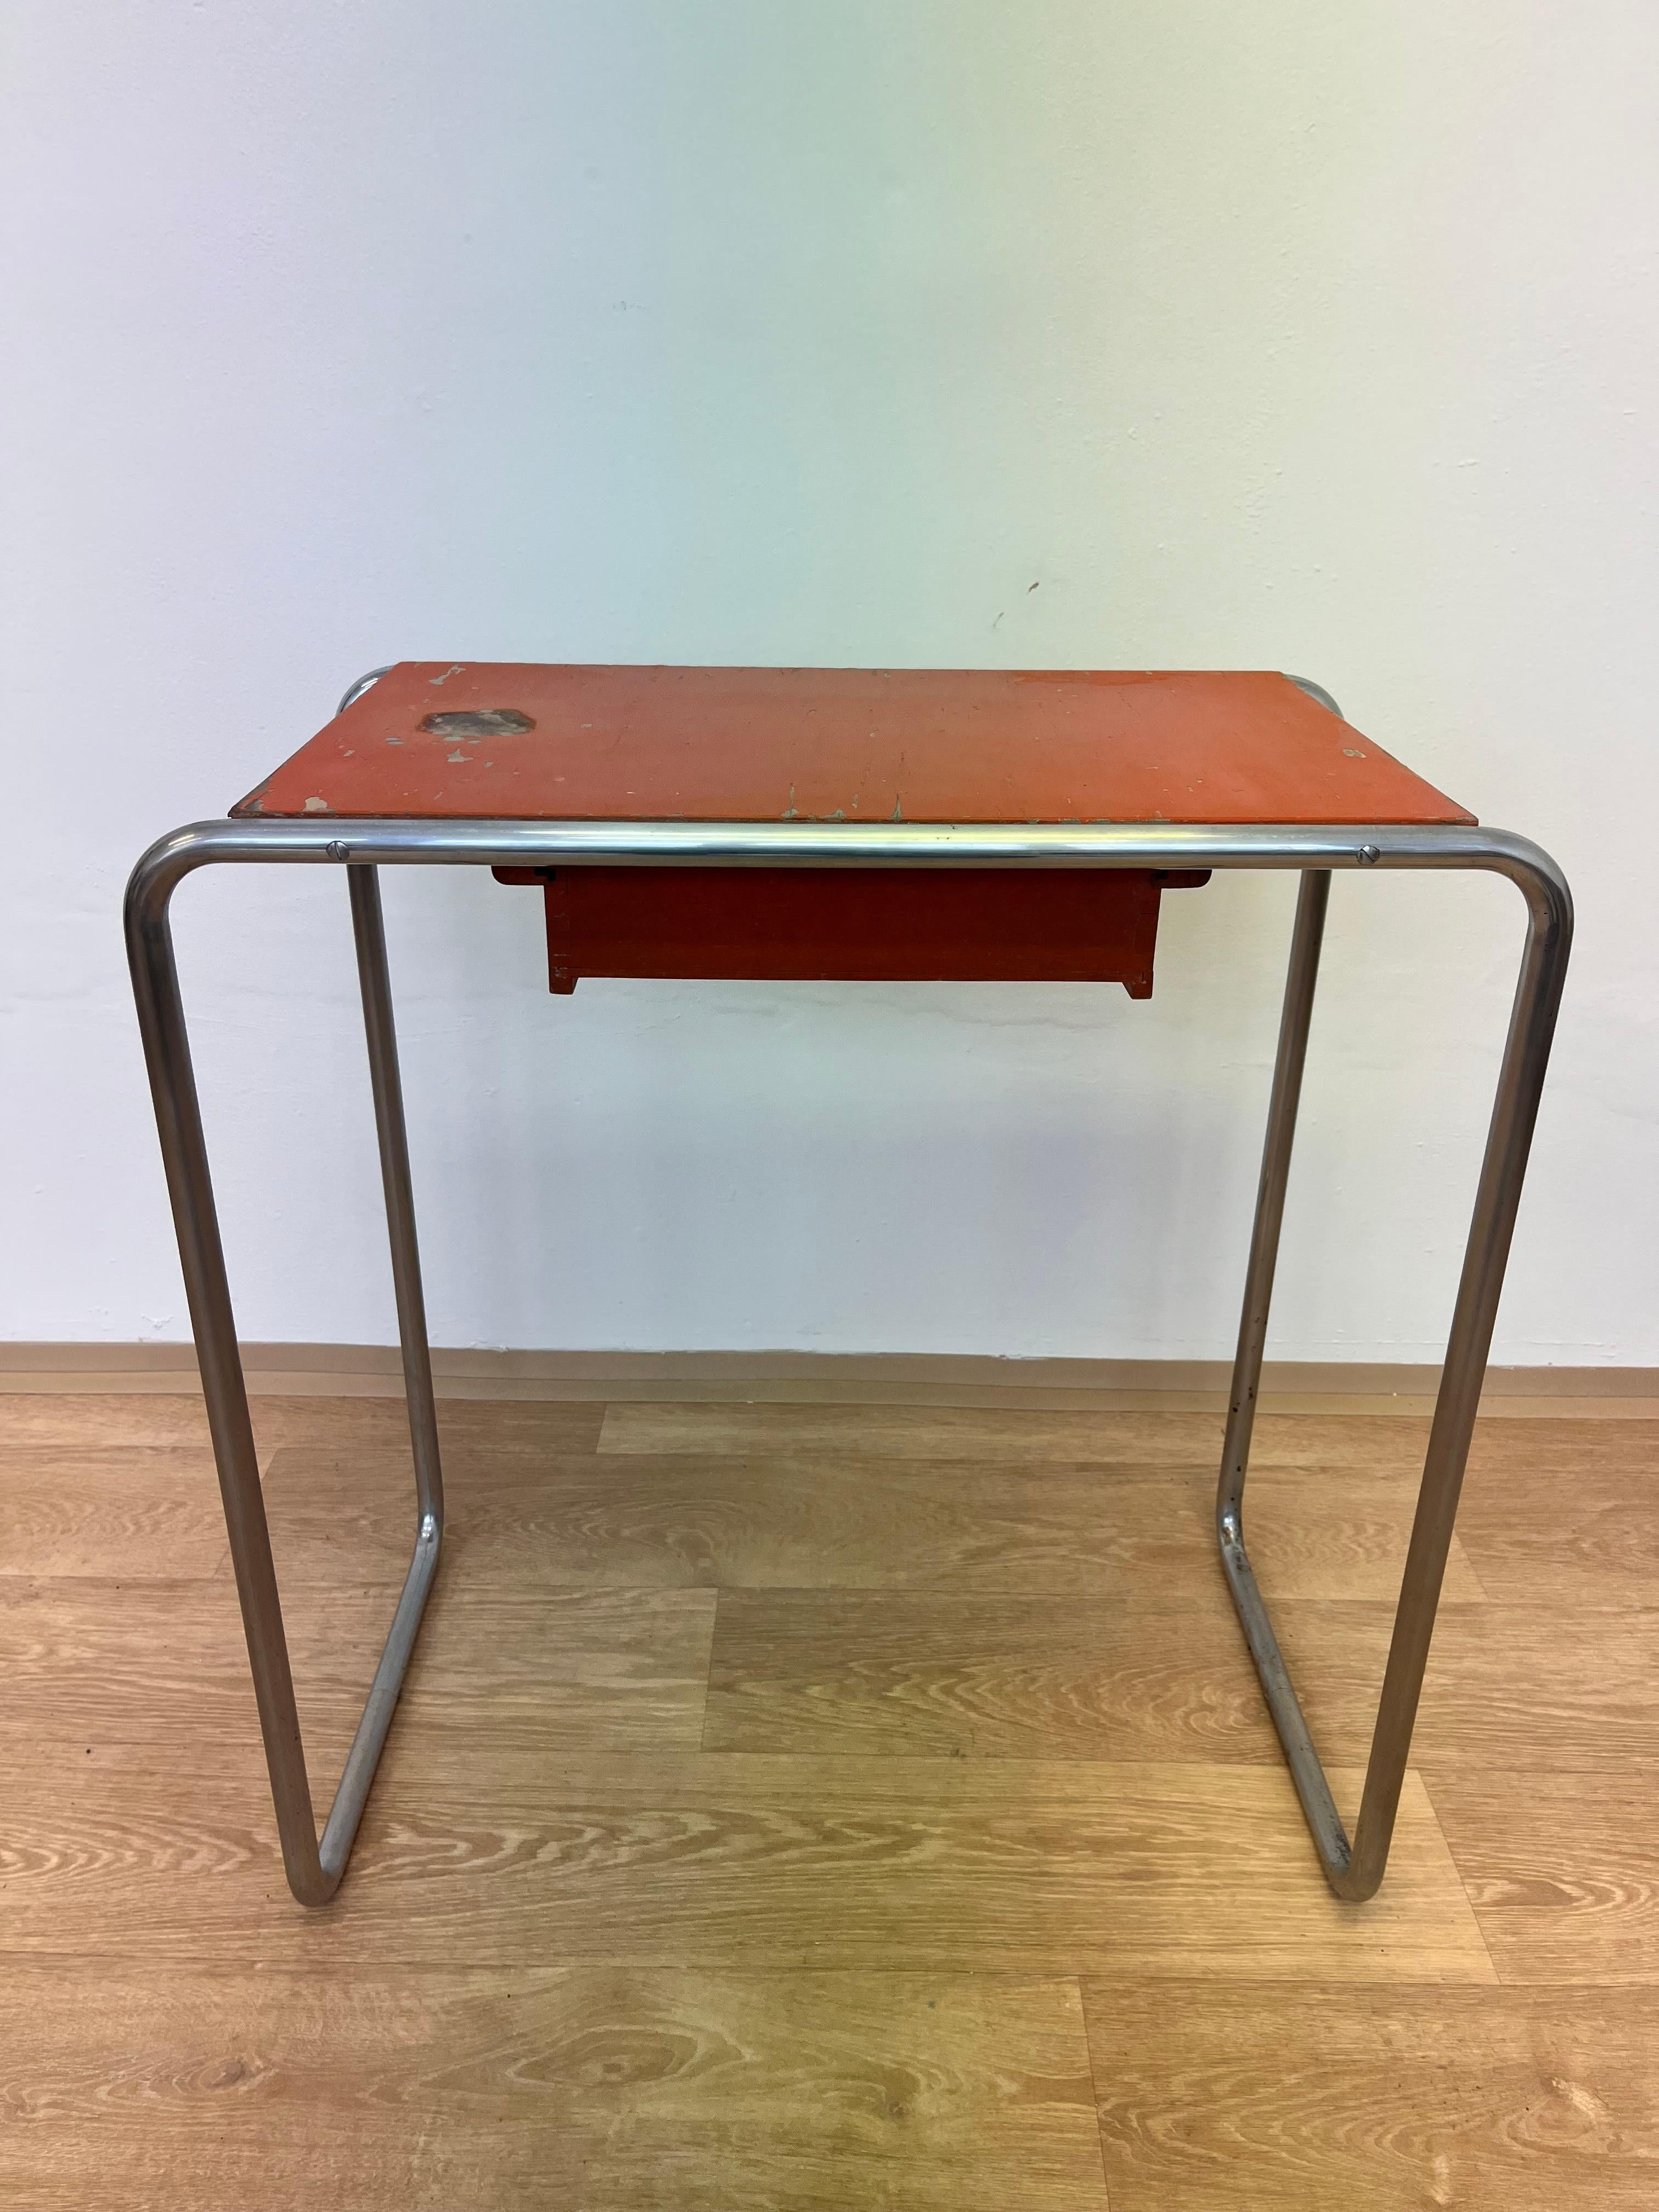 Bauhaus tubular steel Chrome Table model R12 by Robert Slezak - 1930s For Sale 1